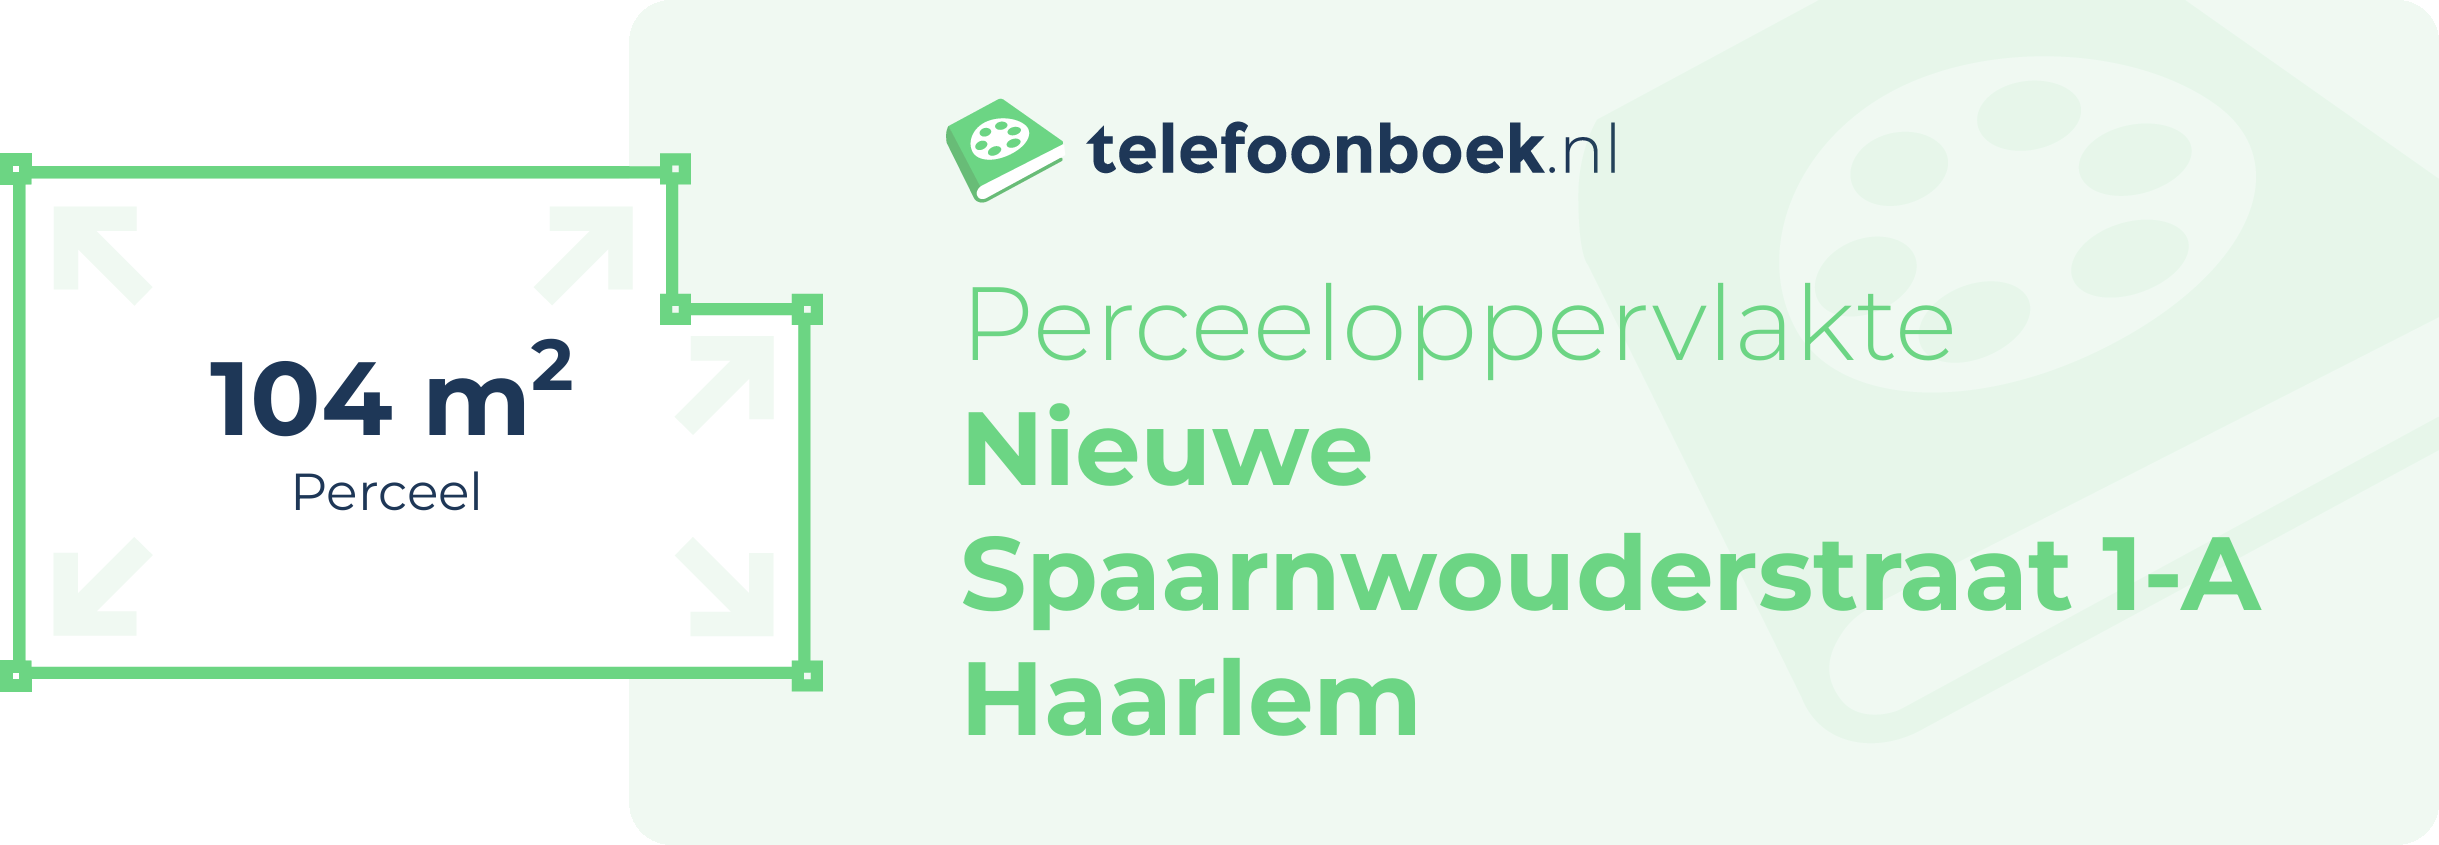 Perceeloppervlakte Nieuwe Spaarnwouderstraat 1-A Haarlem